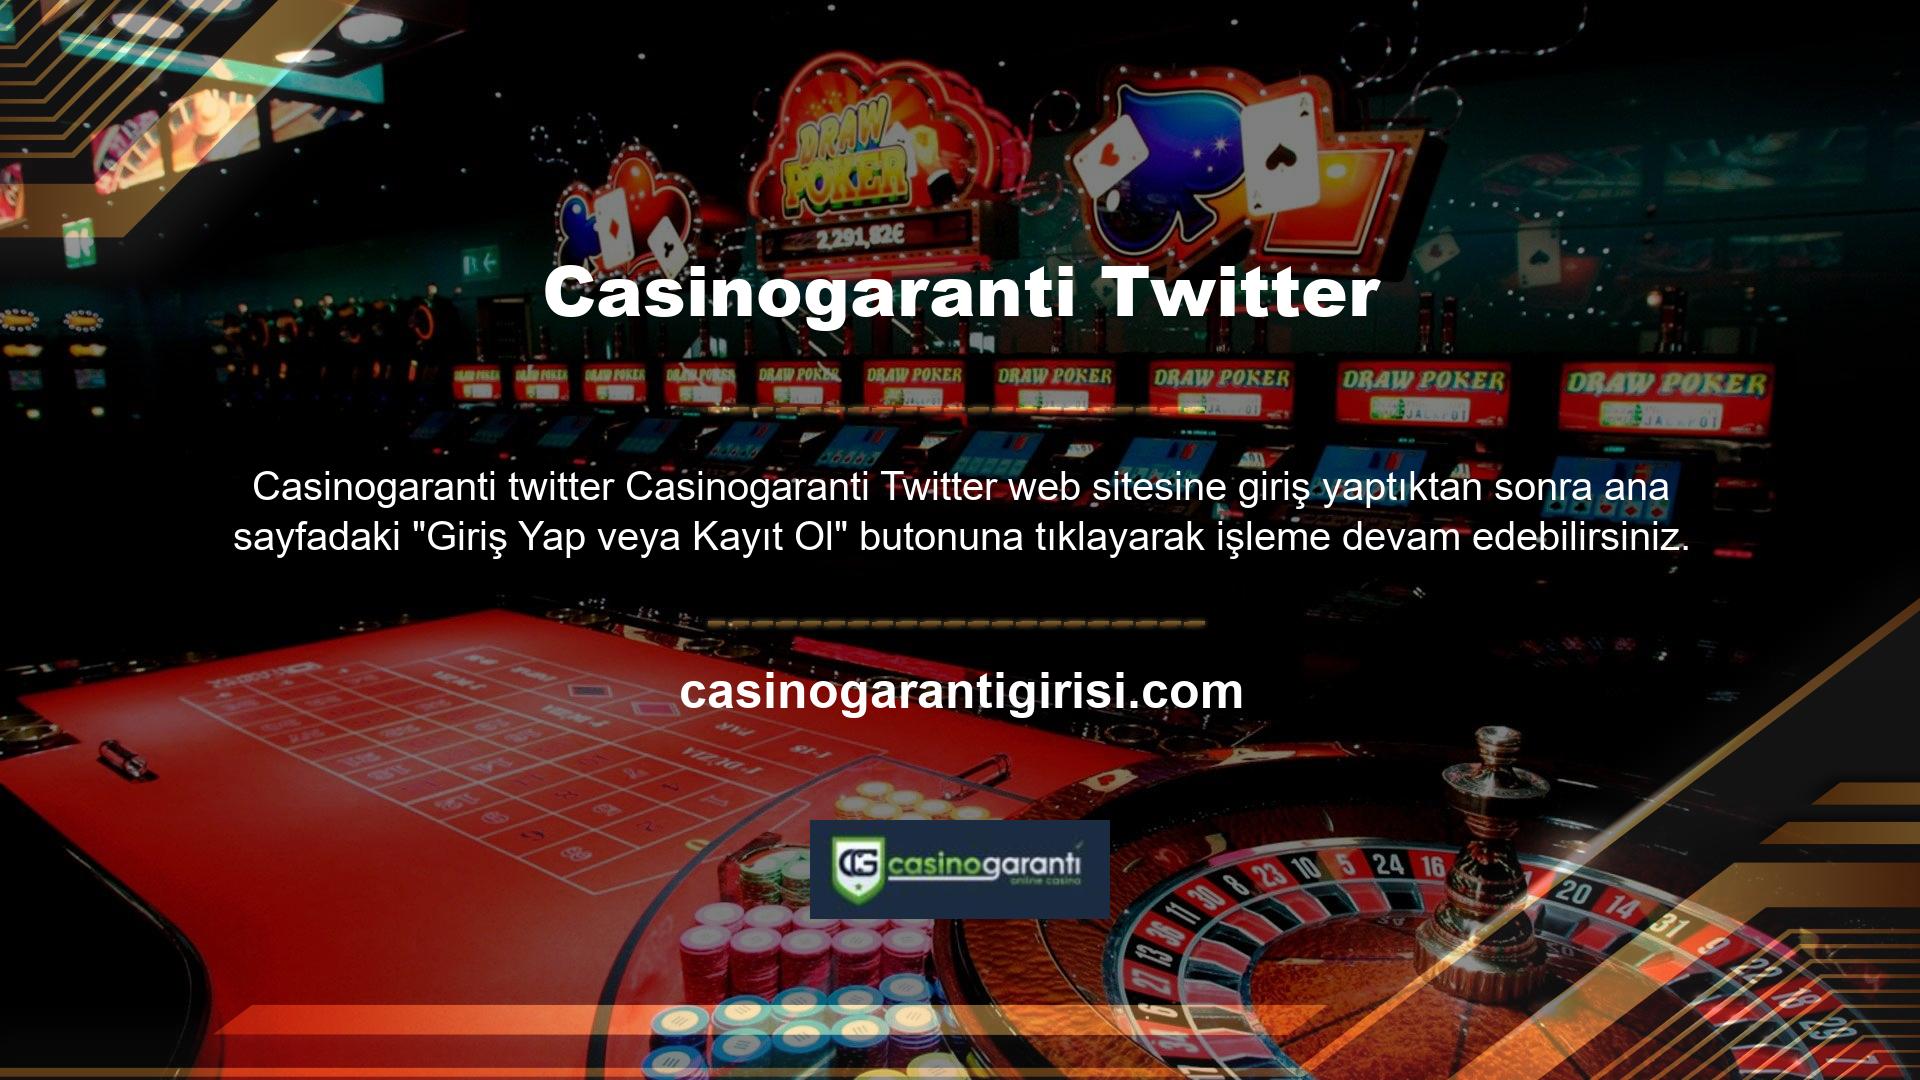 Casinogaranti Oyun Sitesi Casino, oyunculara canlı casino ve slot güncellemeleri ve yeni promosyonlar ile kolaylık sunuyor